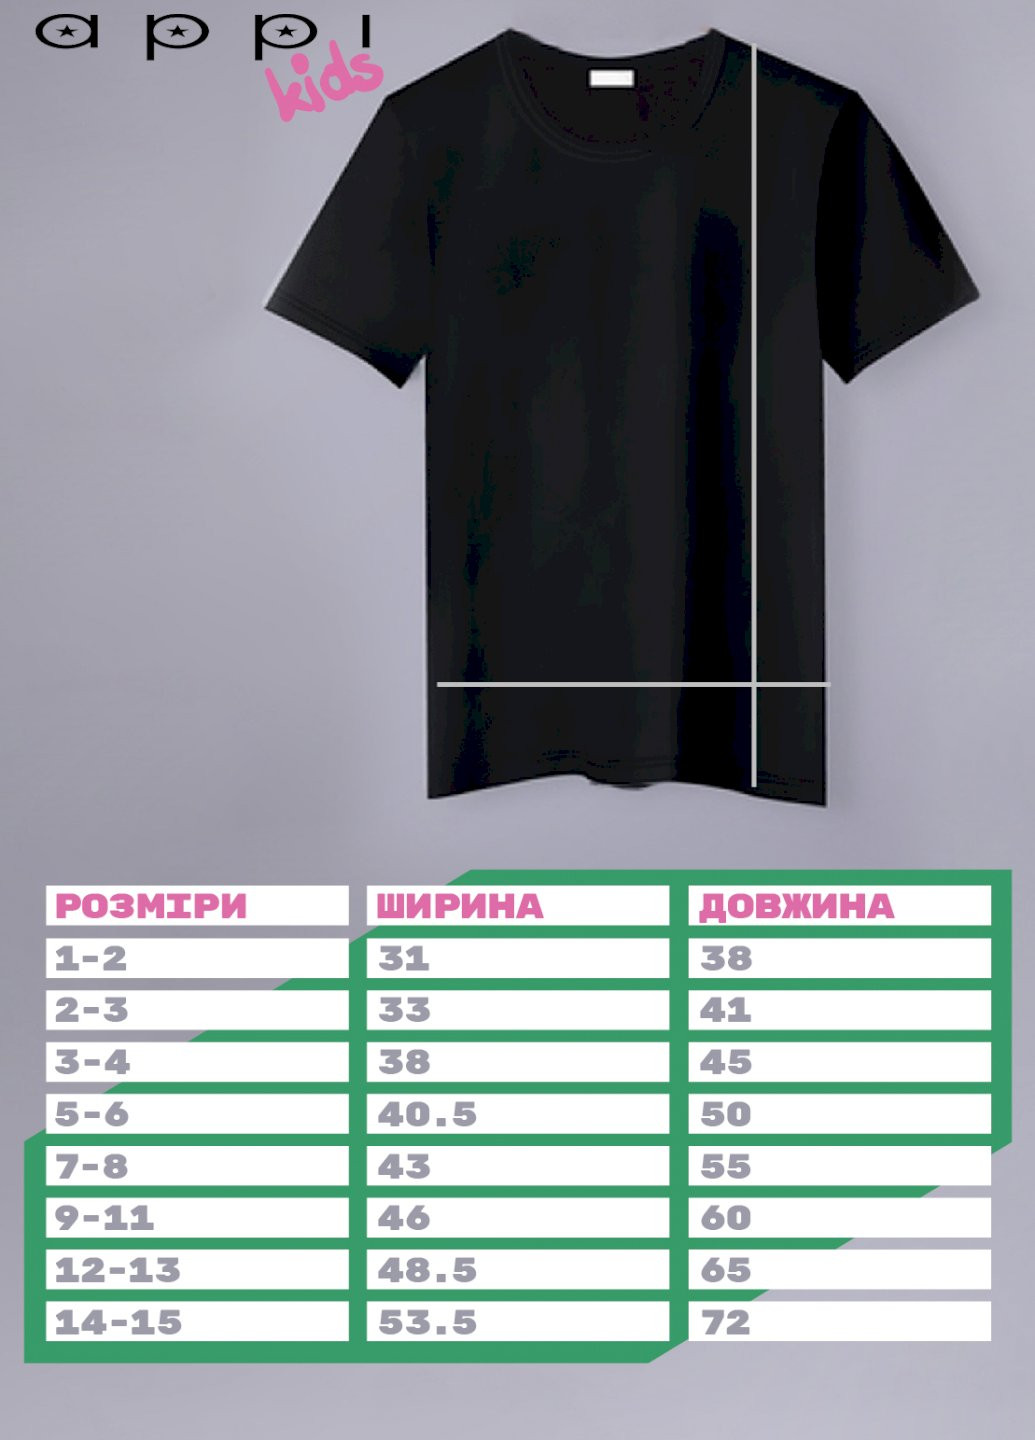 Черная демисезонная футболка детская черная патриотическая "artem est. ukraine" YAPPI